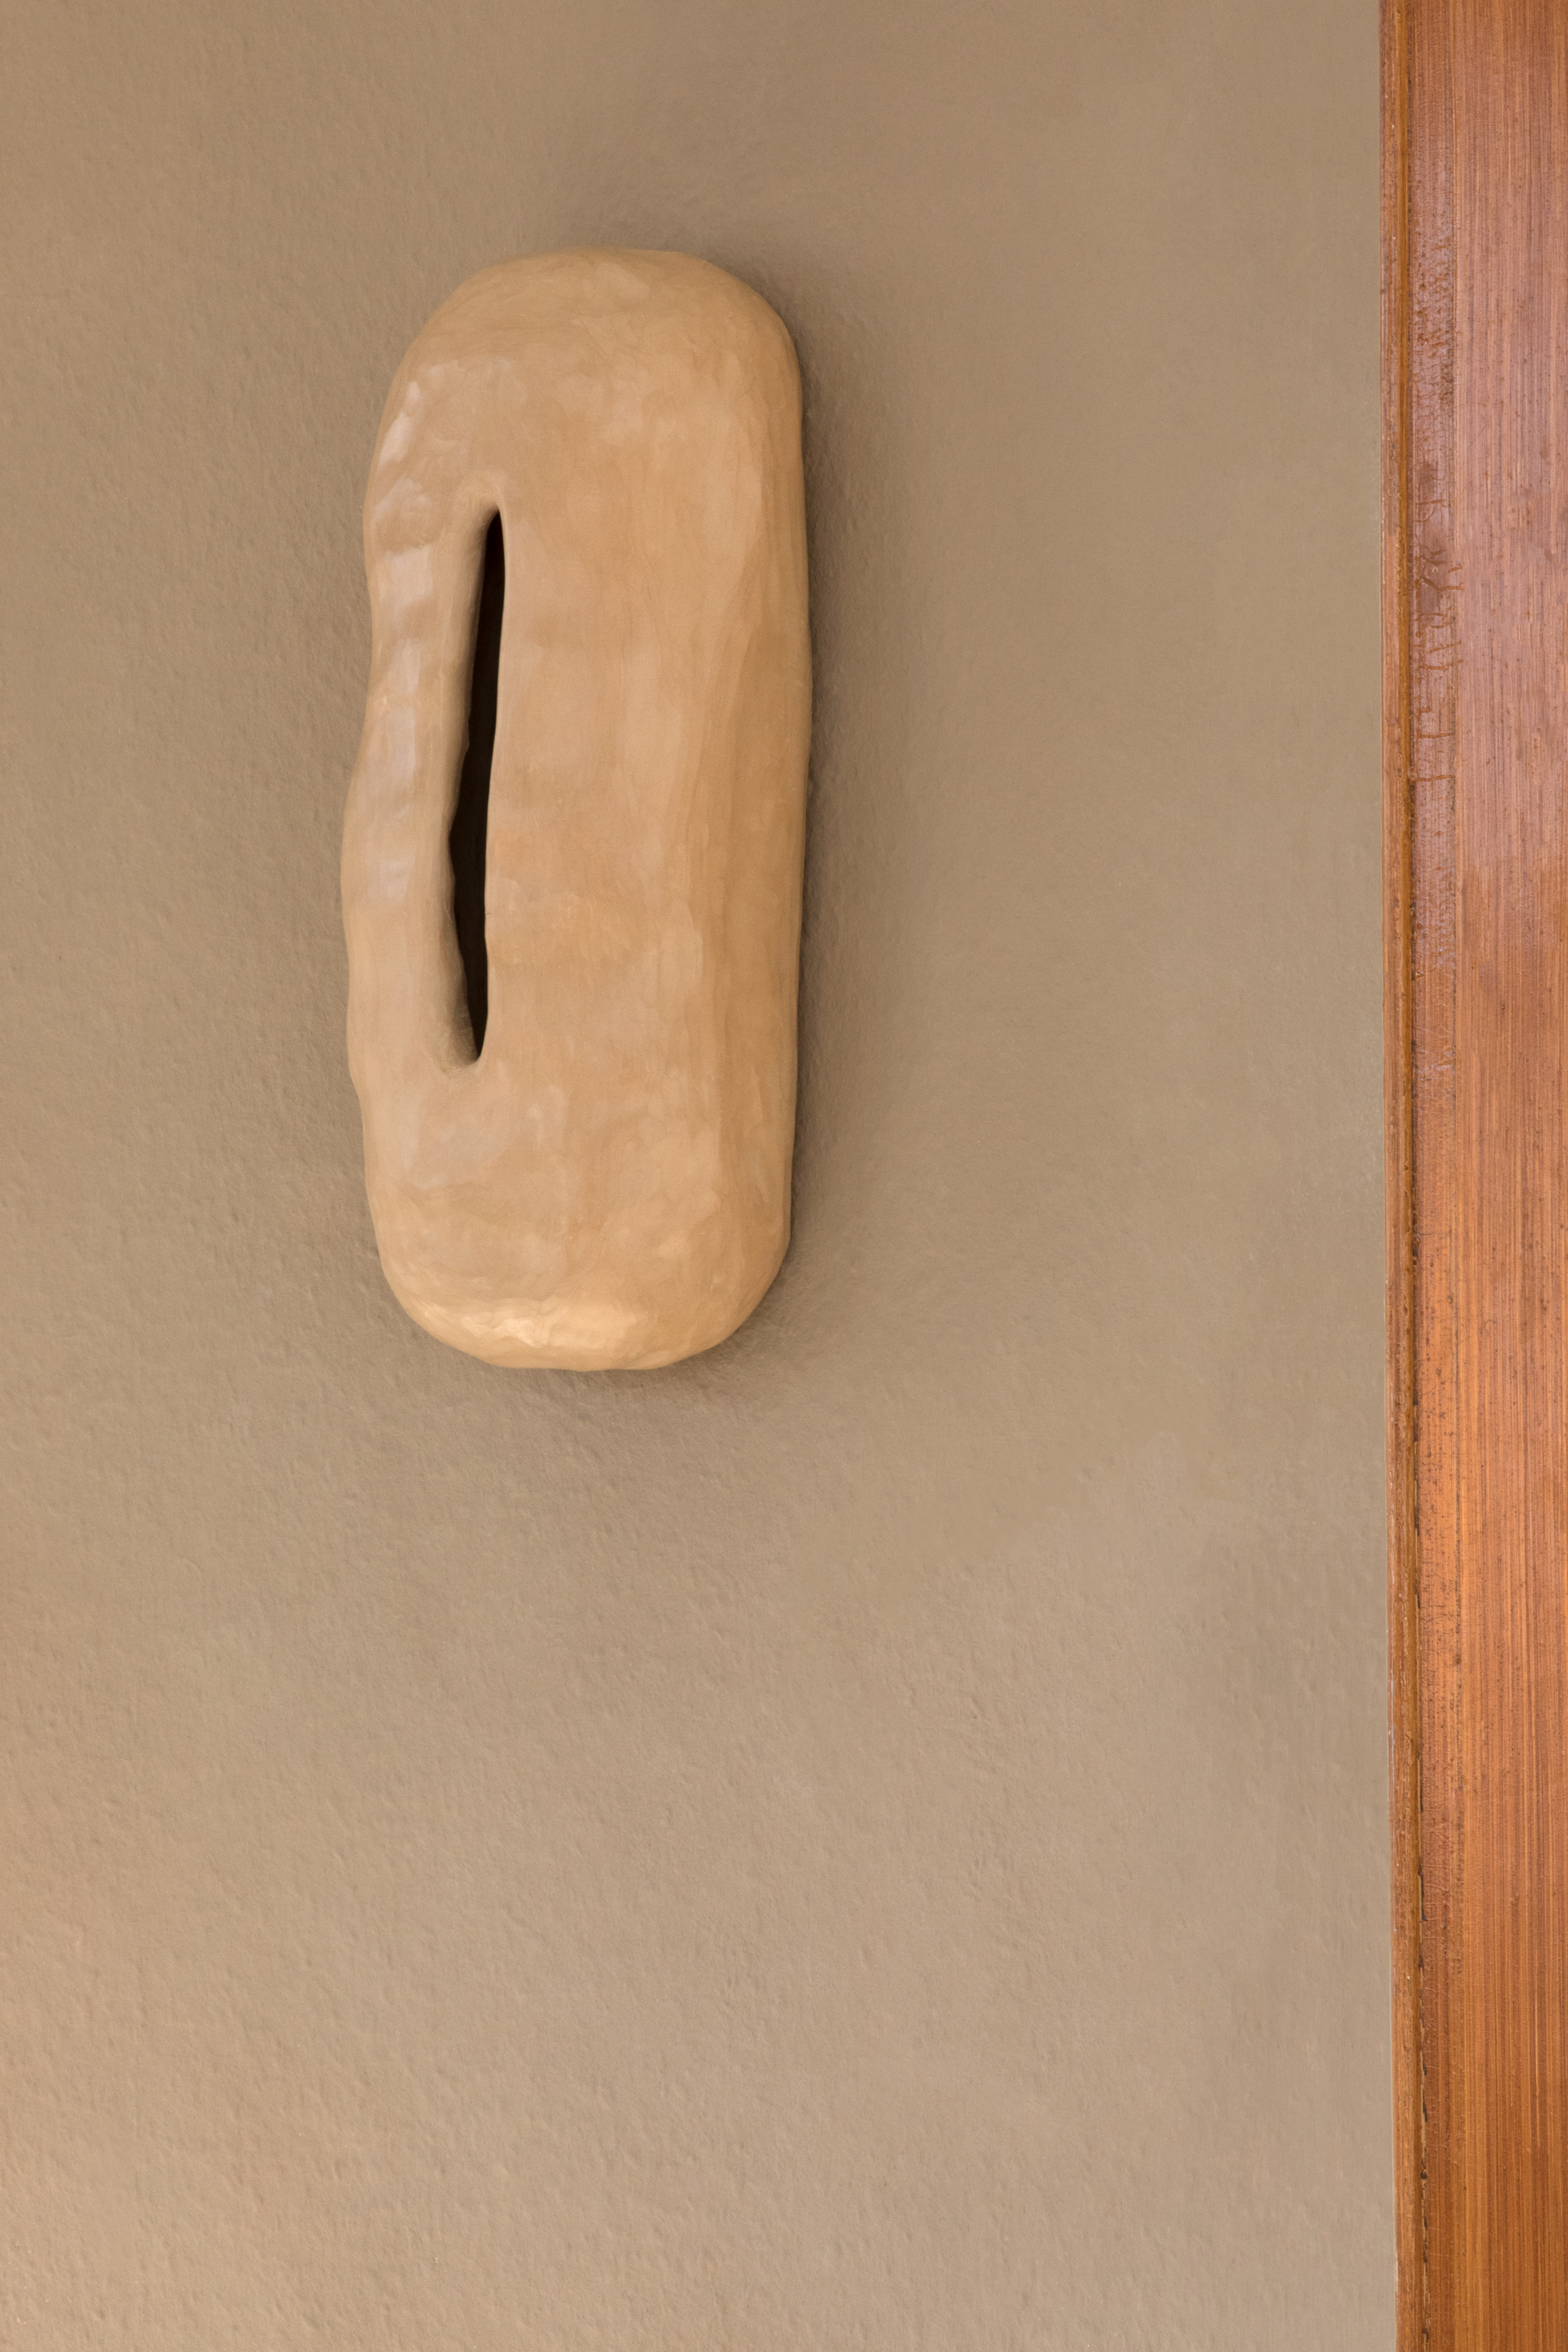 Jannis Zell, *Hideout Pebble*, Ceramics, 14×35×20cm